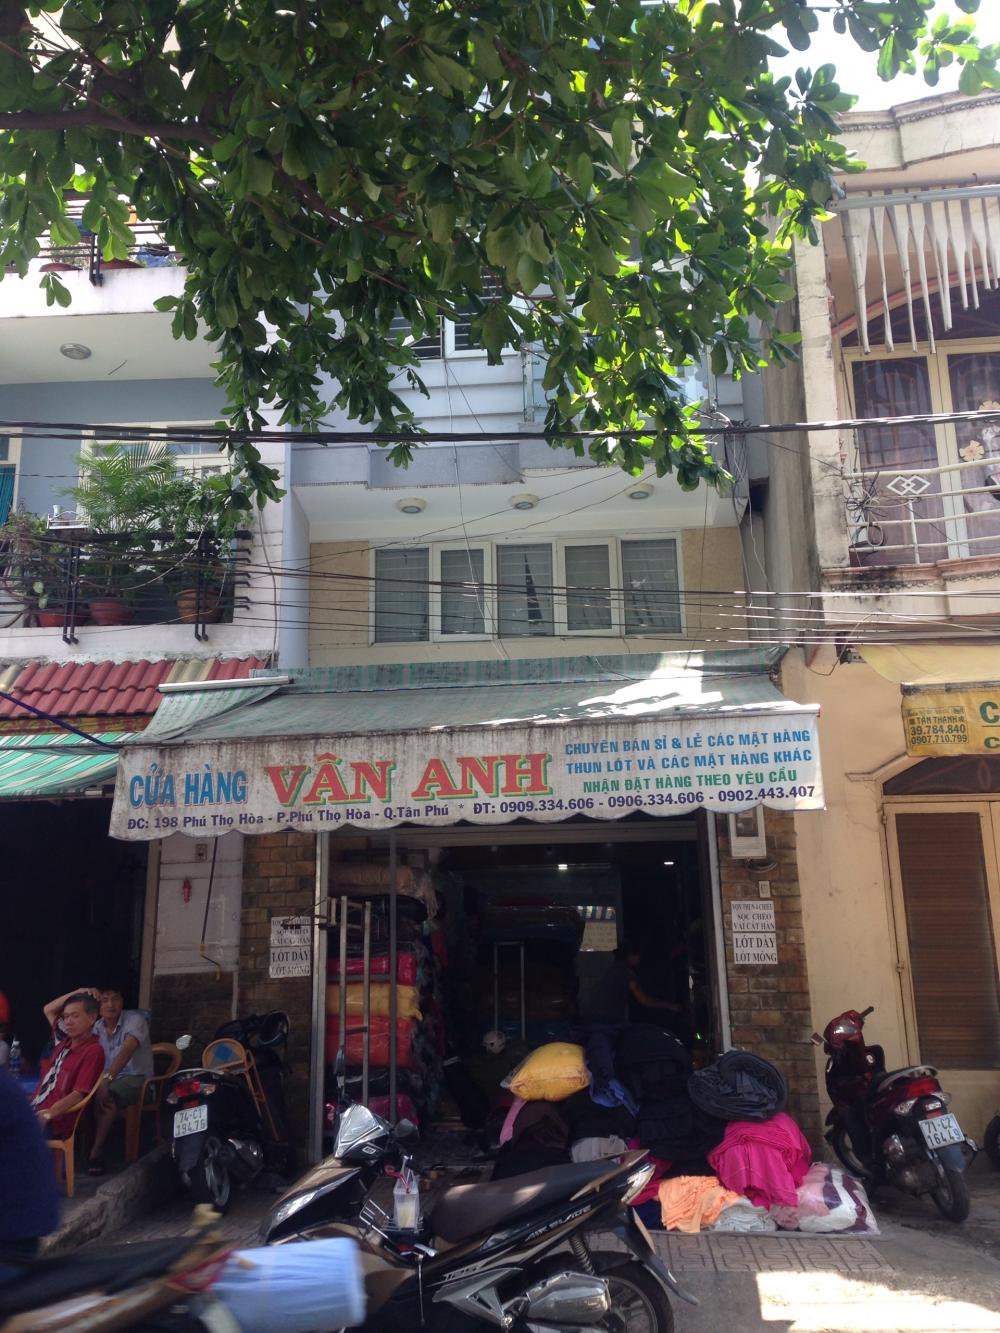 Bán nhà đẹp chính chủ đường Phú Thọ Hòa - Quận Tân Phú – Hồ Chí Minh